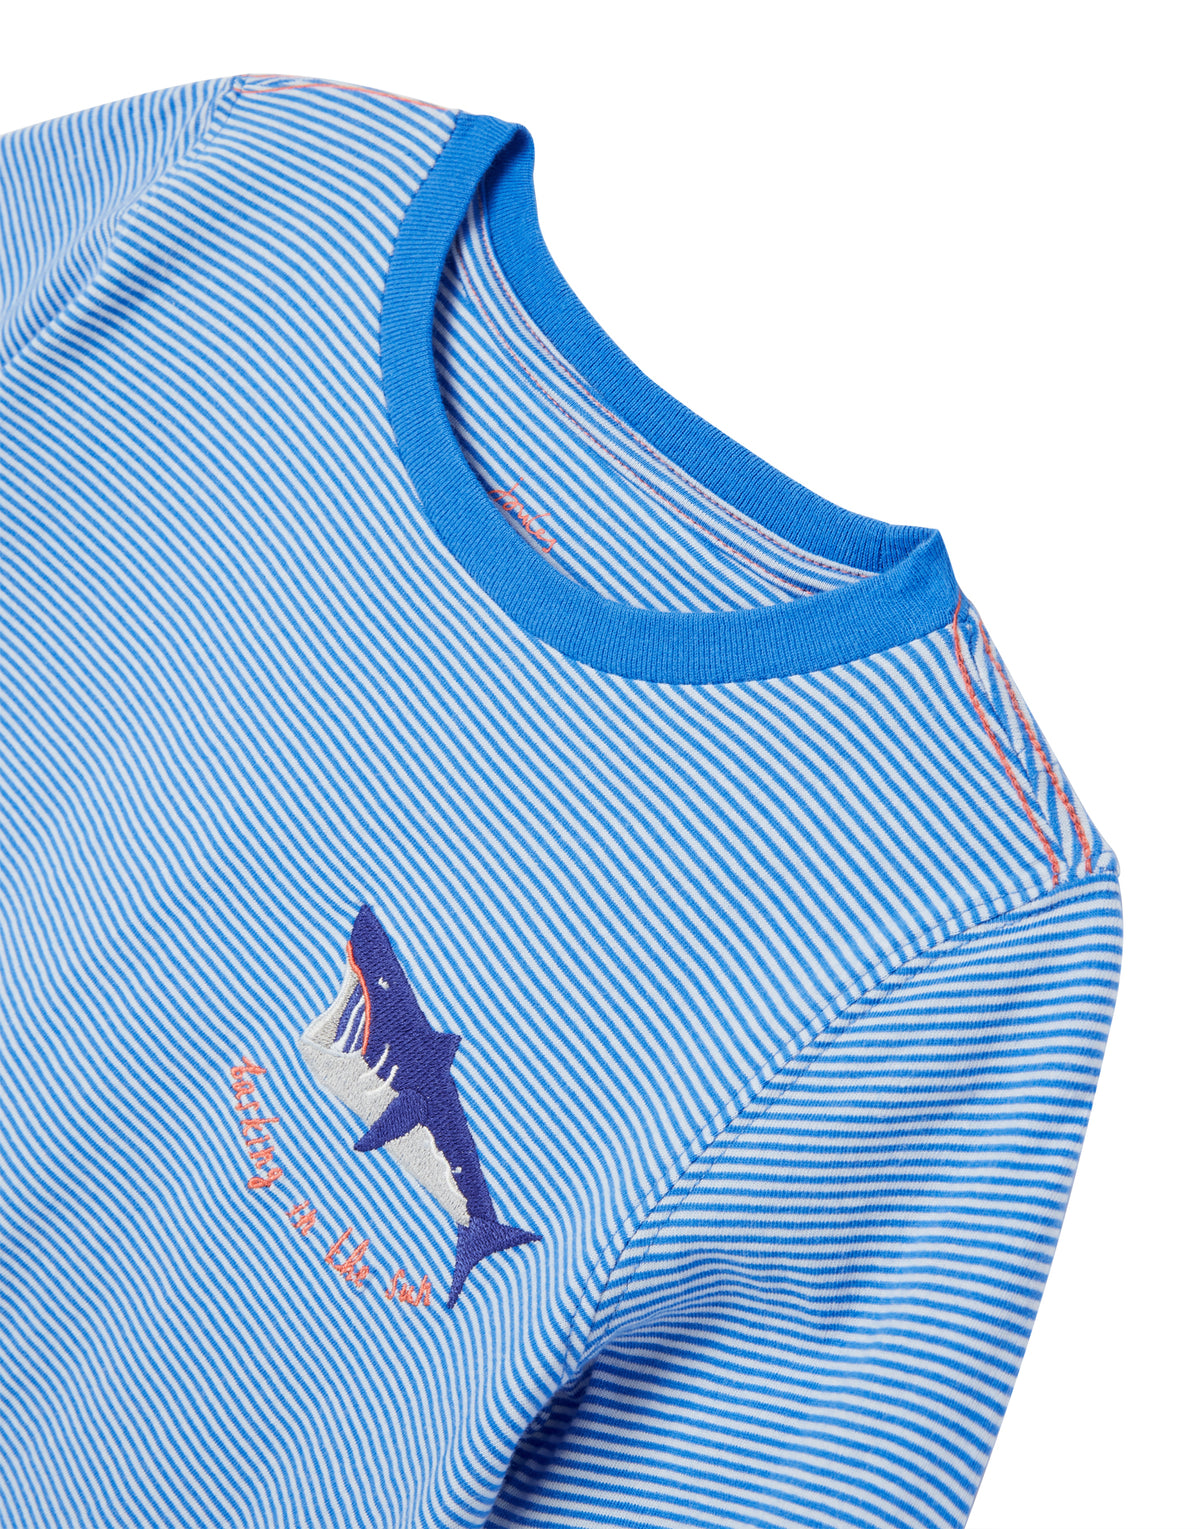 Jungen T-Shirt Island Blue Stripe 217000